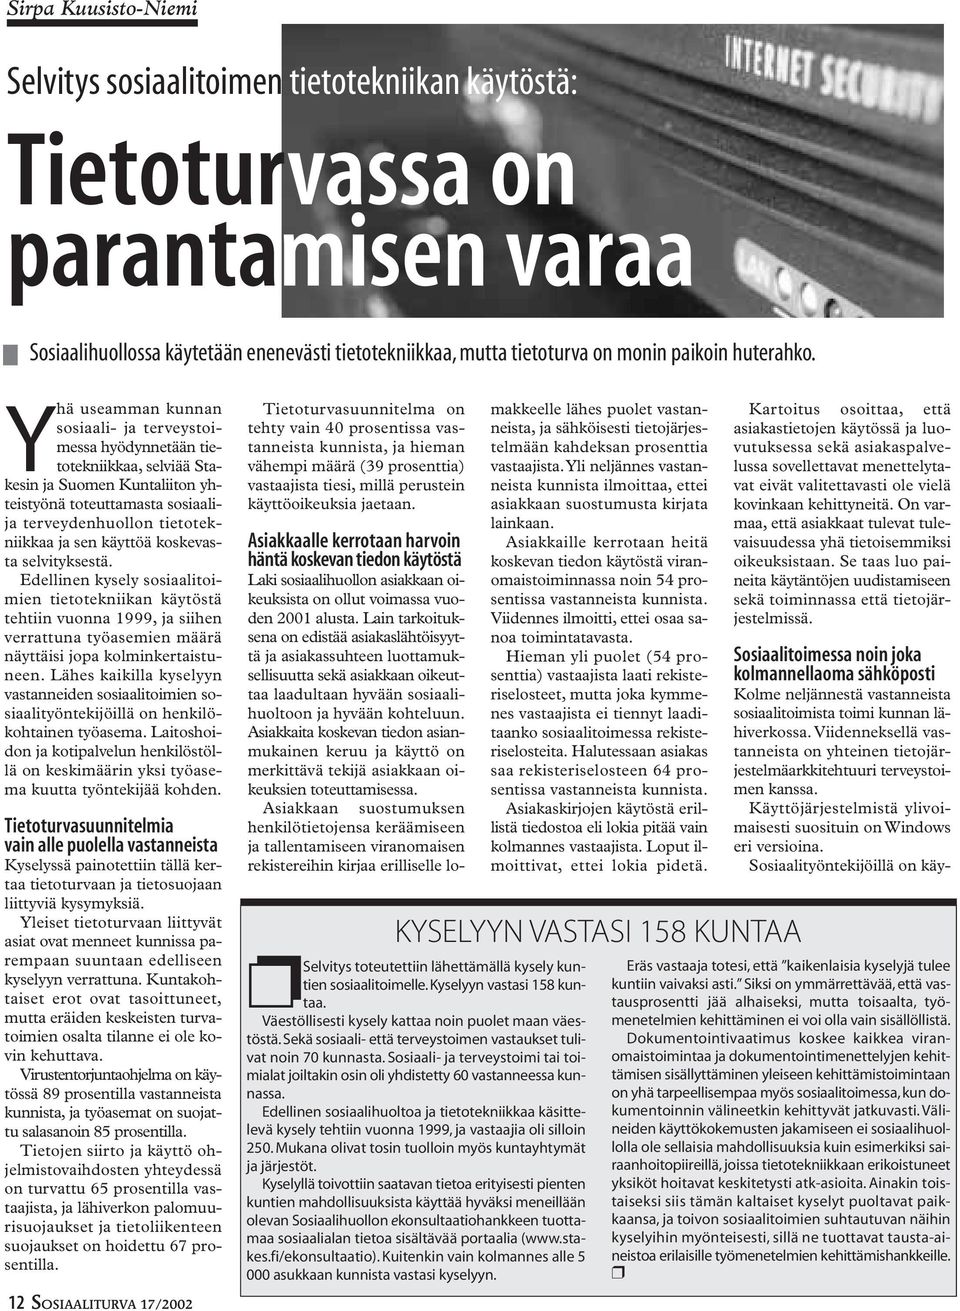 Yhä useamman kunnan sosiaali- ja terveystoimessa hyödynnetään tietotekniikkaa, selviää Stakesin ja Suomen Kuntaliiton yhteistyönä toteuttamasta sosiaalija terveydenhuollon tietotekniikkaa ja sen